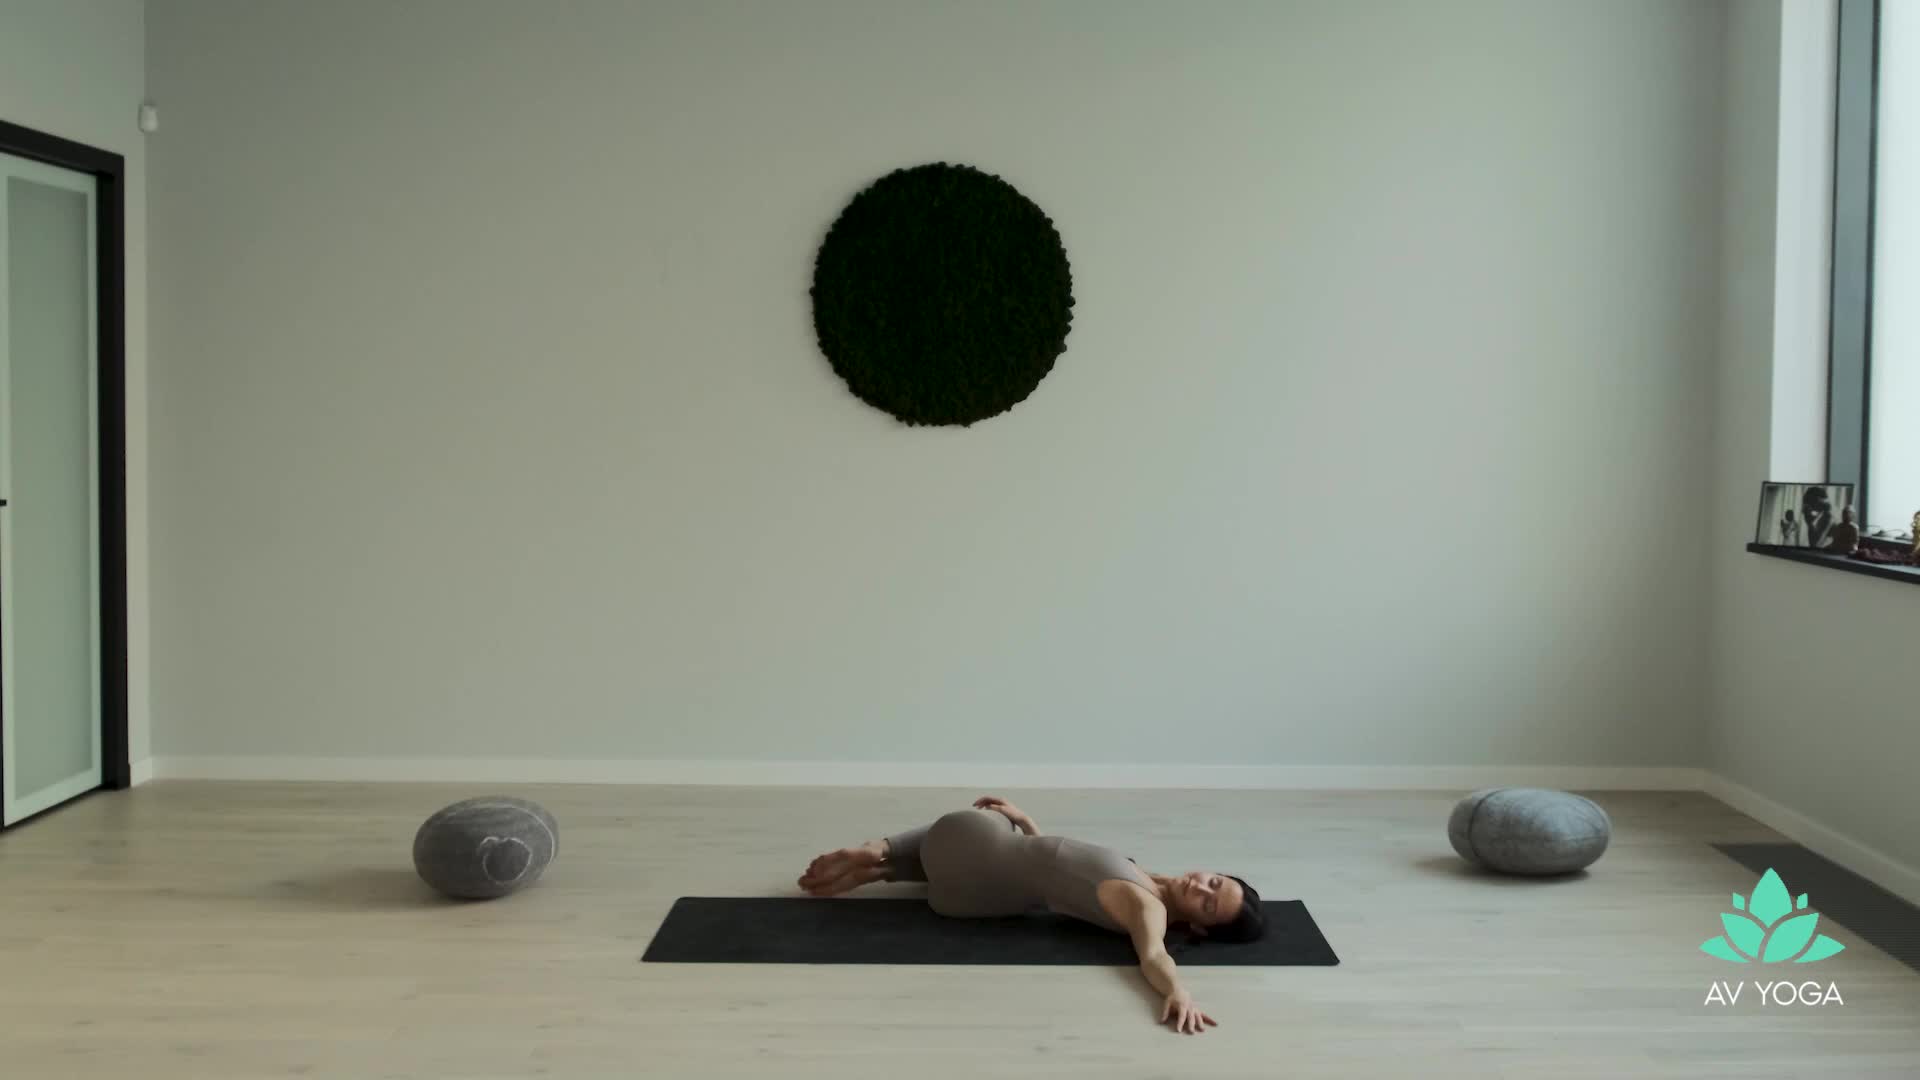 Дыхание, которое расслабляет тело, успокаивает ум и приводит к внутреннему спокойствию и балансу + медитация на звуках